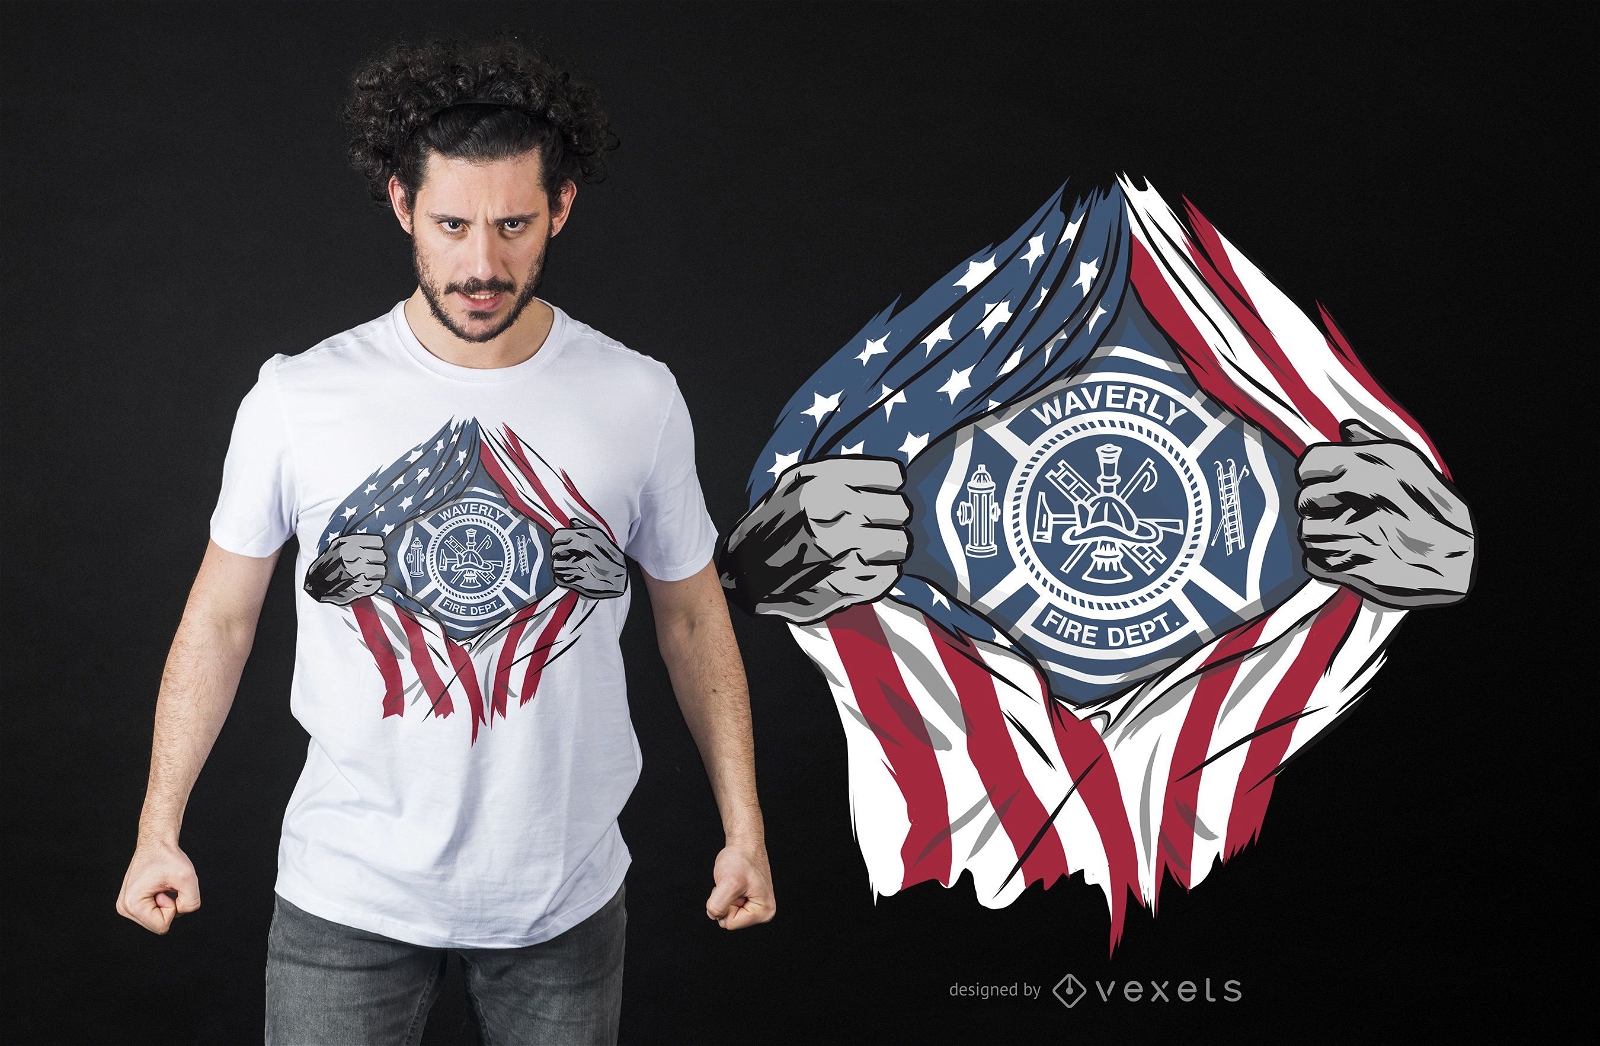 Super Feuerwehrmann T-Shirt Design